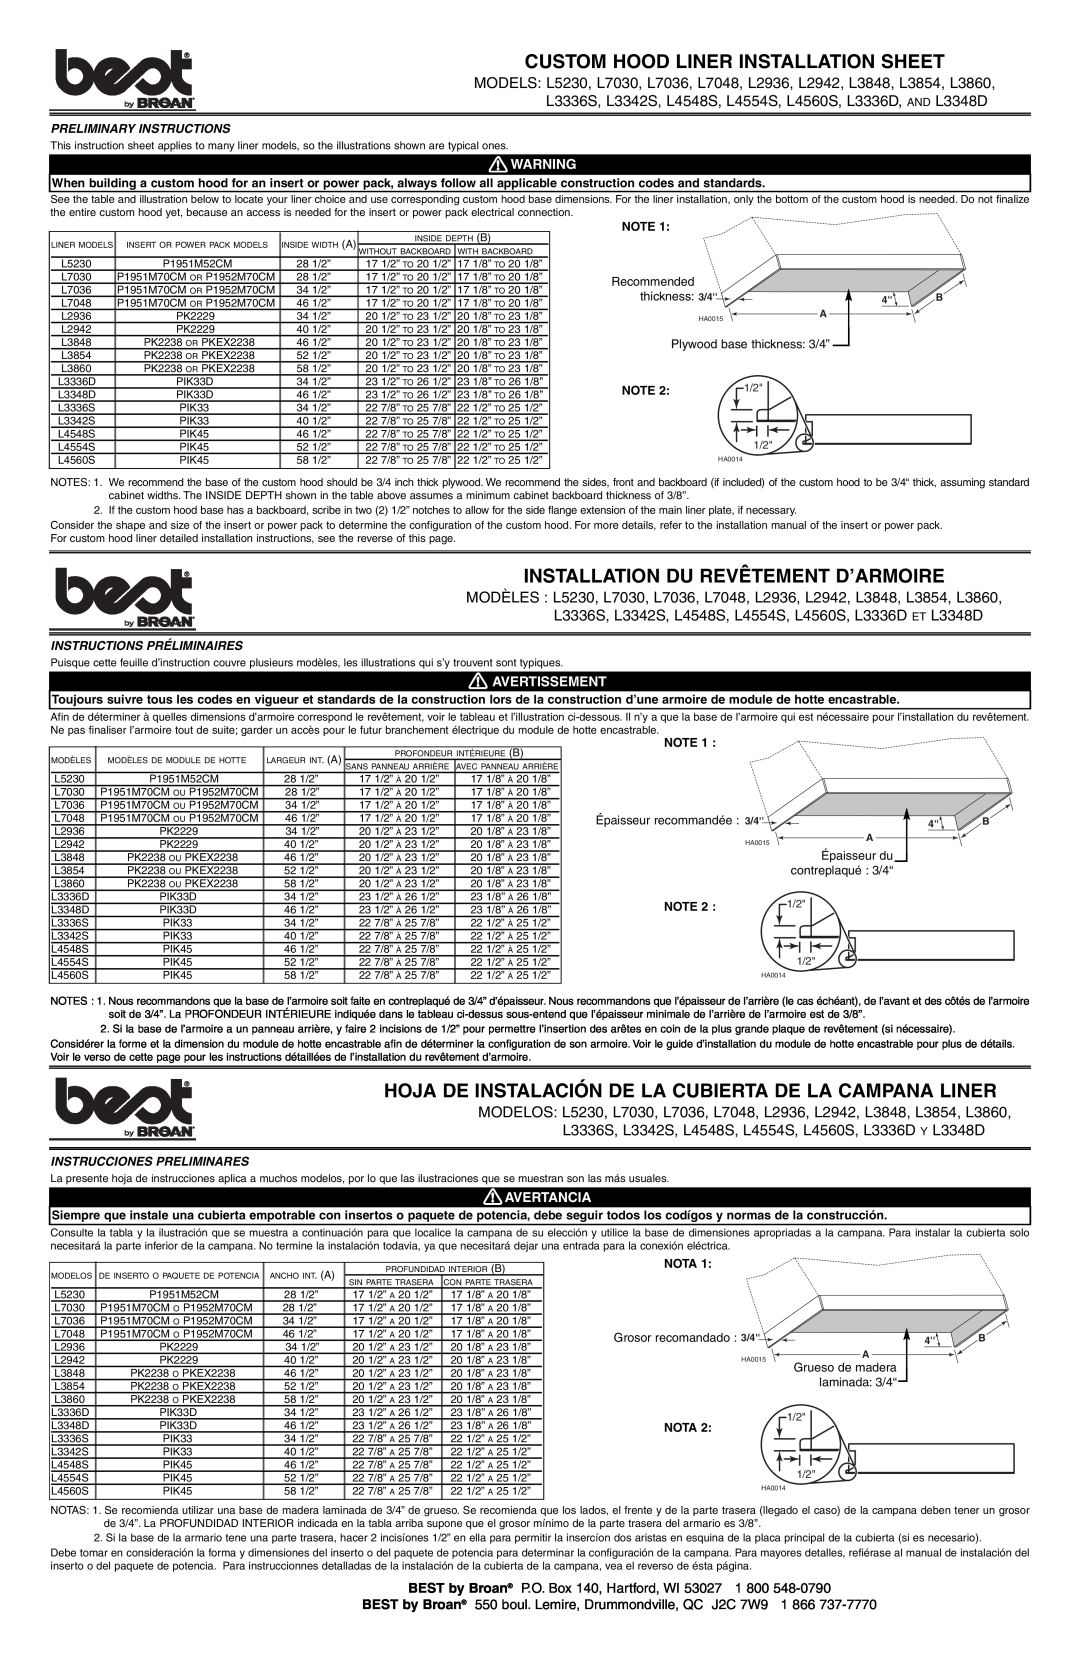 Best L5230 instruction sheet Custom Hood Liner Installation Sheet, Installation Du Revêtement D’Armoire, Avertissement 